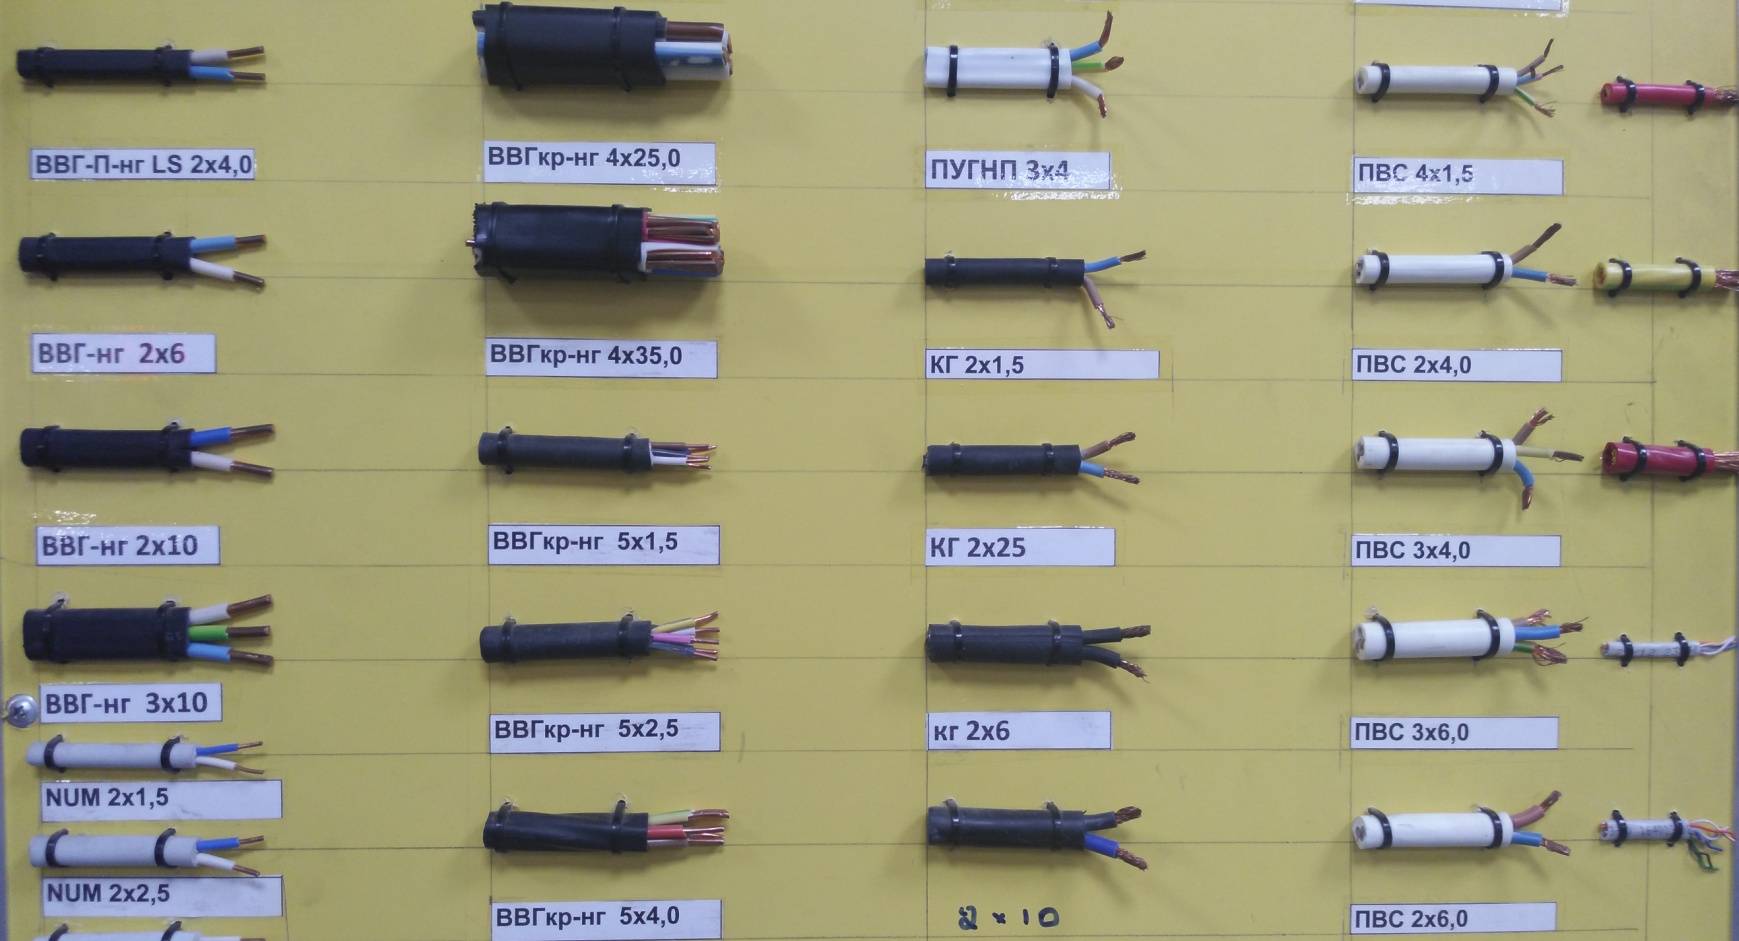 Типы кабелей и проводов. основные виды и их различия